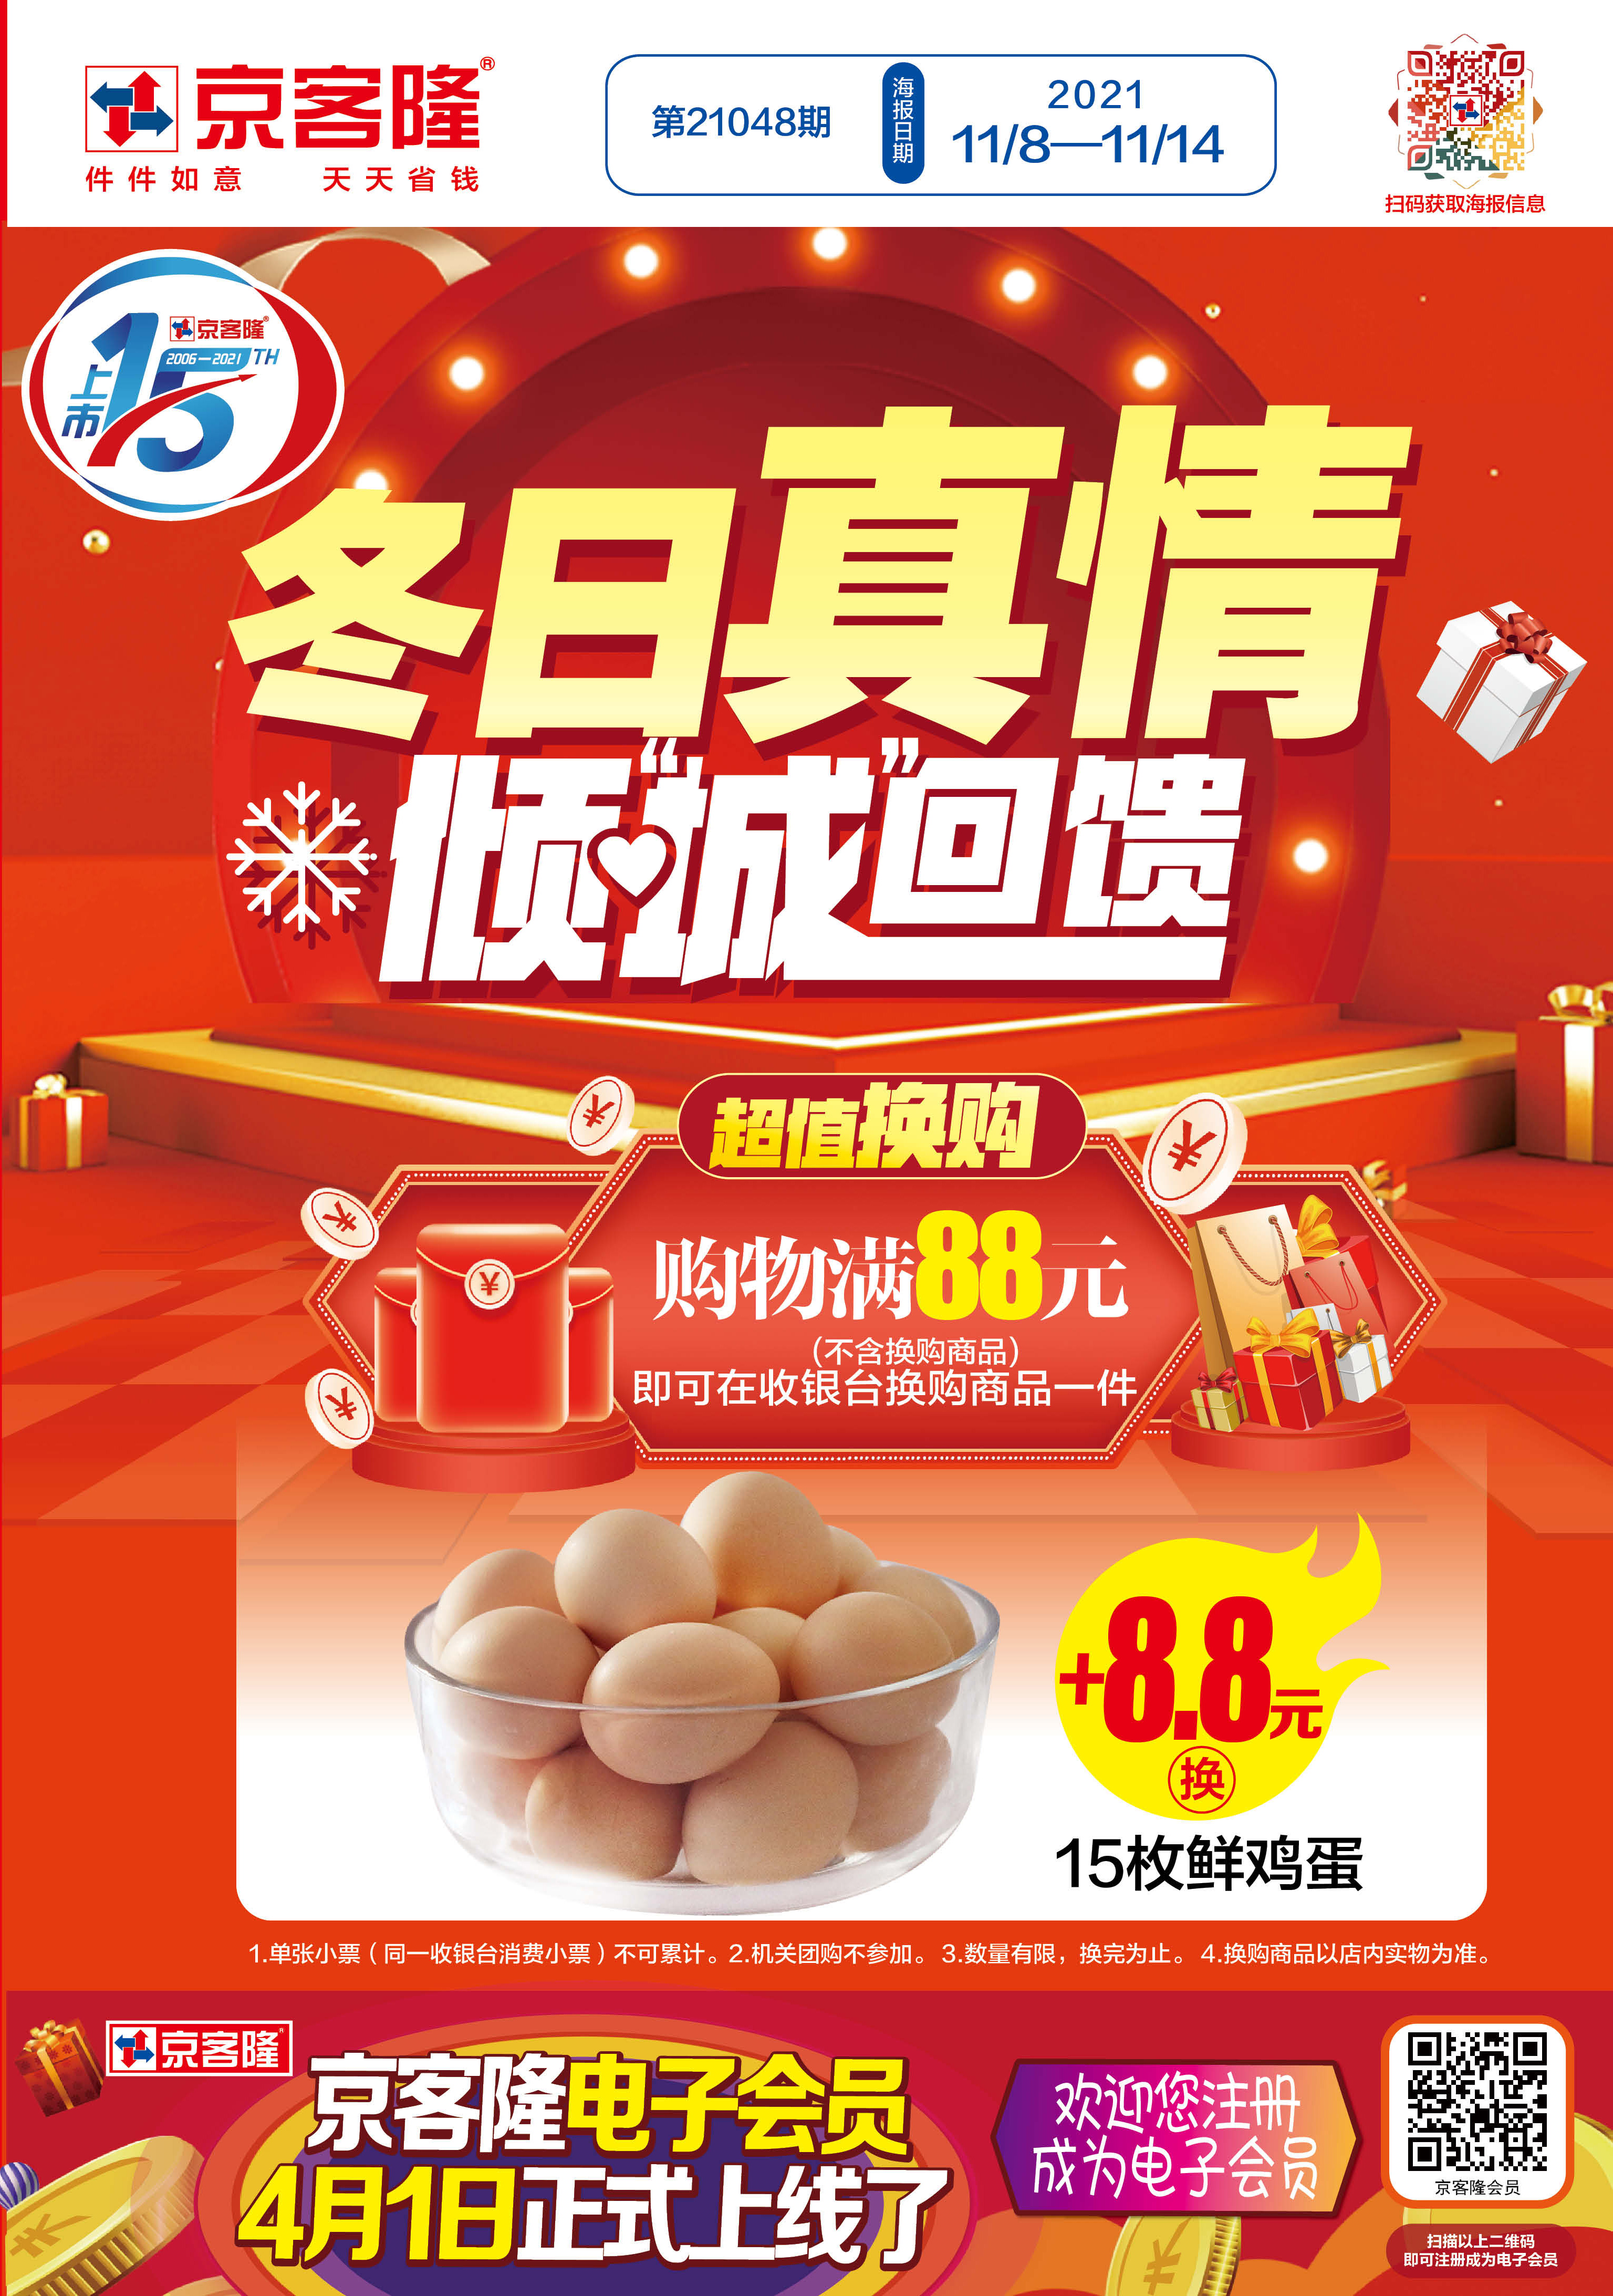 北京京客隆超市促销海报（第21048期）